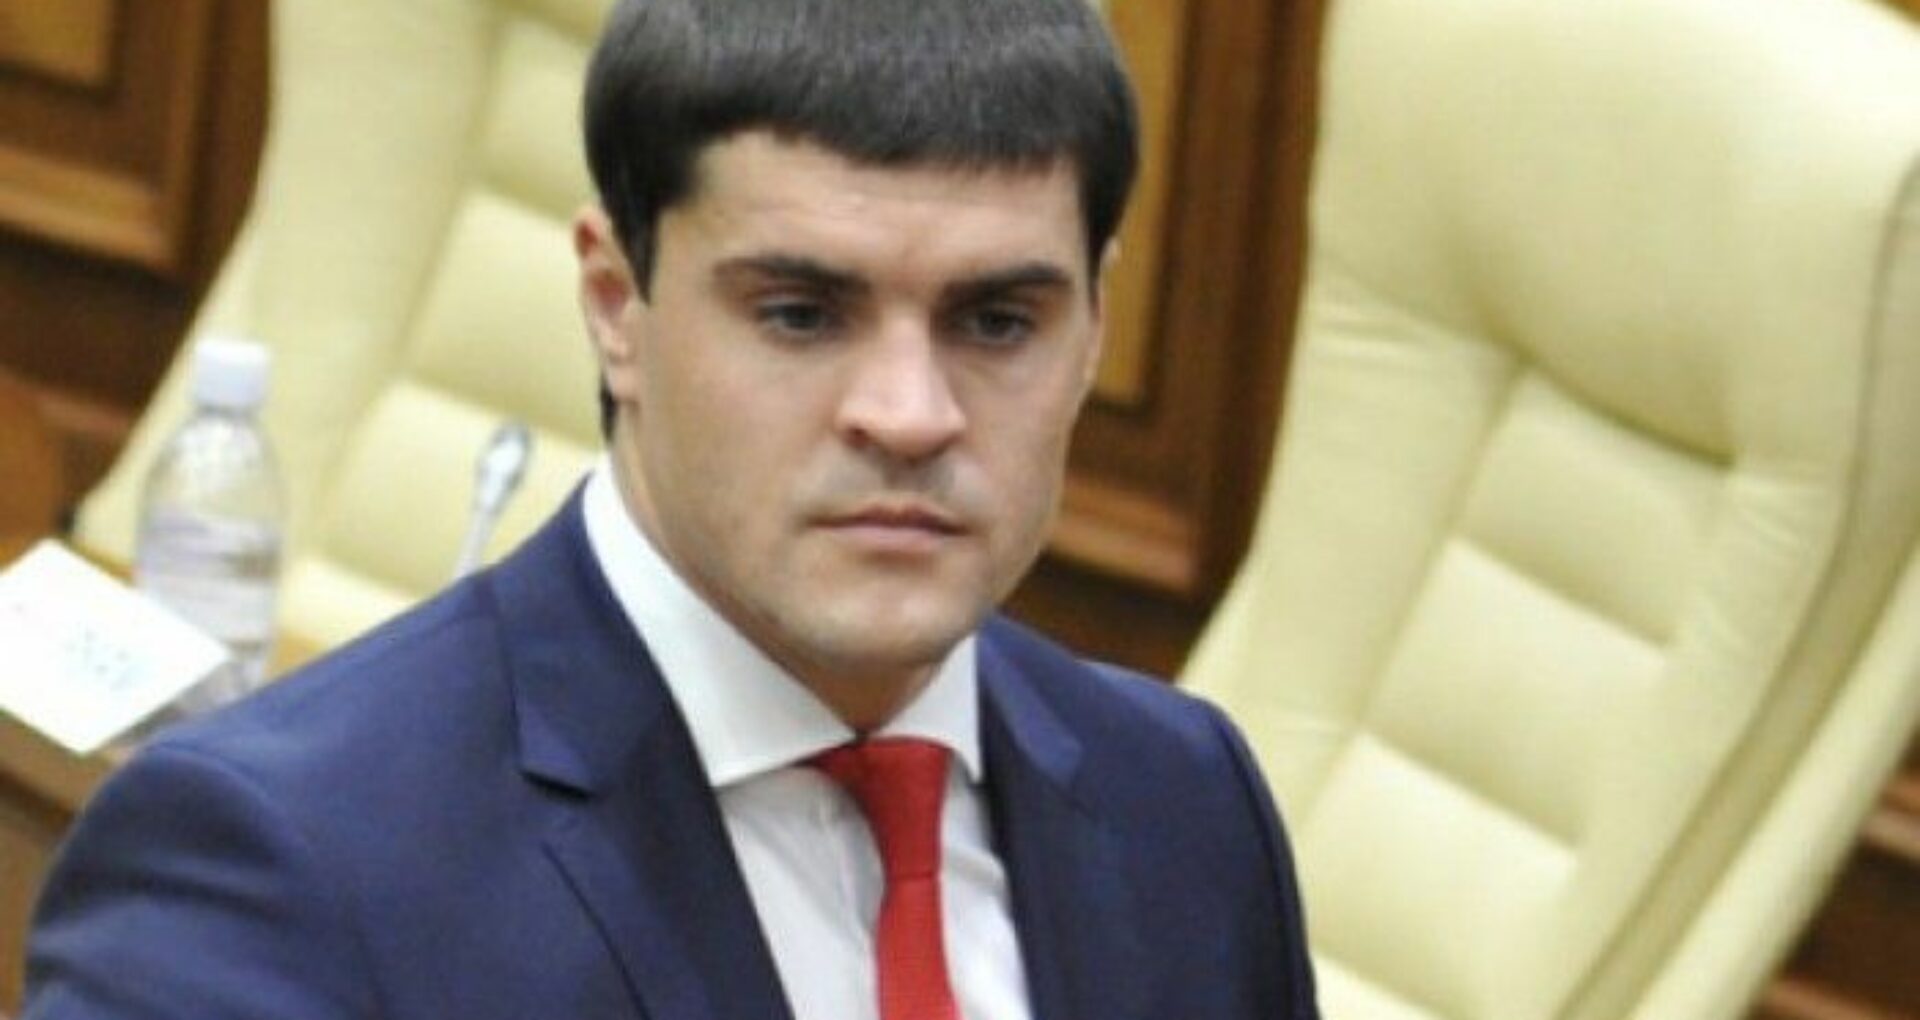 PA a trimis în instanță cauza în care ex-deputatul PDM Constantin Țuțu este cercetat pentru îmbogățire ilicită și fals în declarații